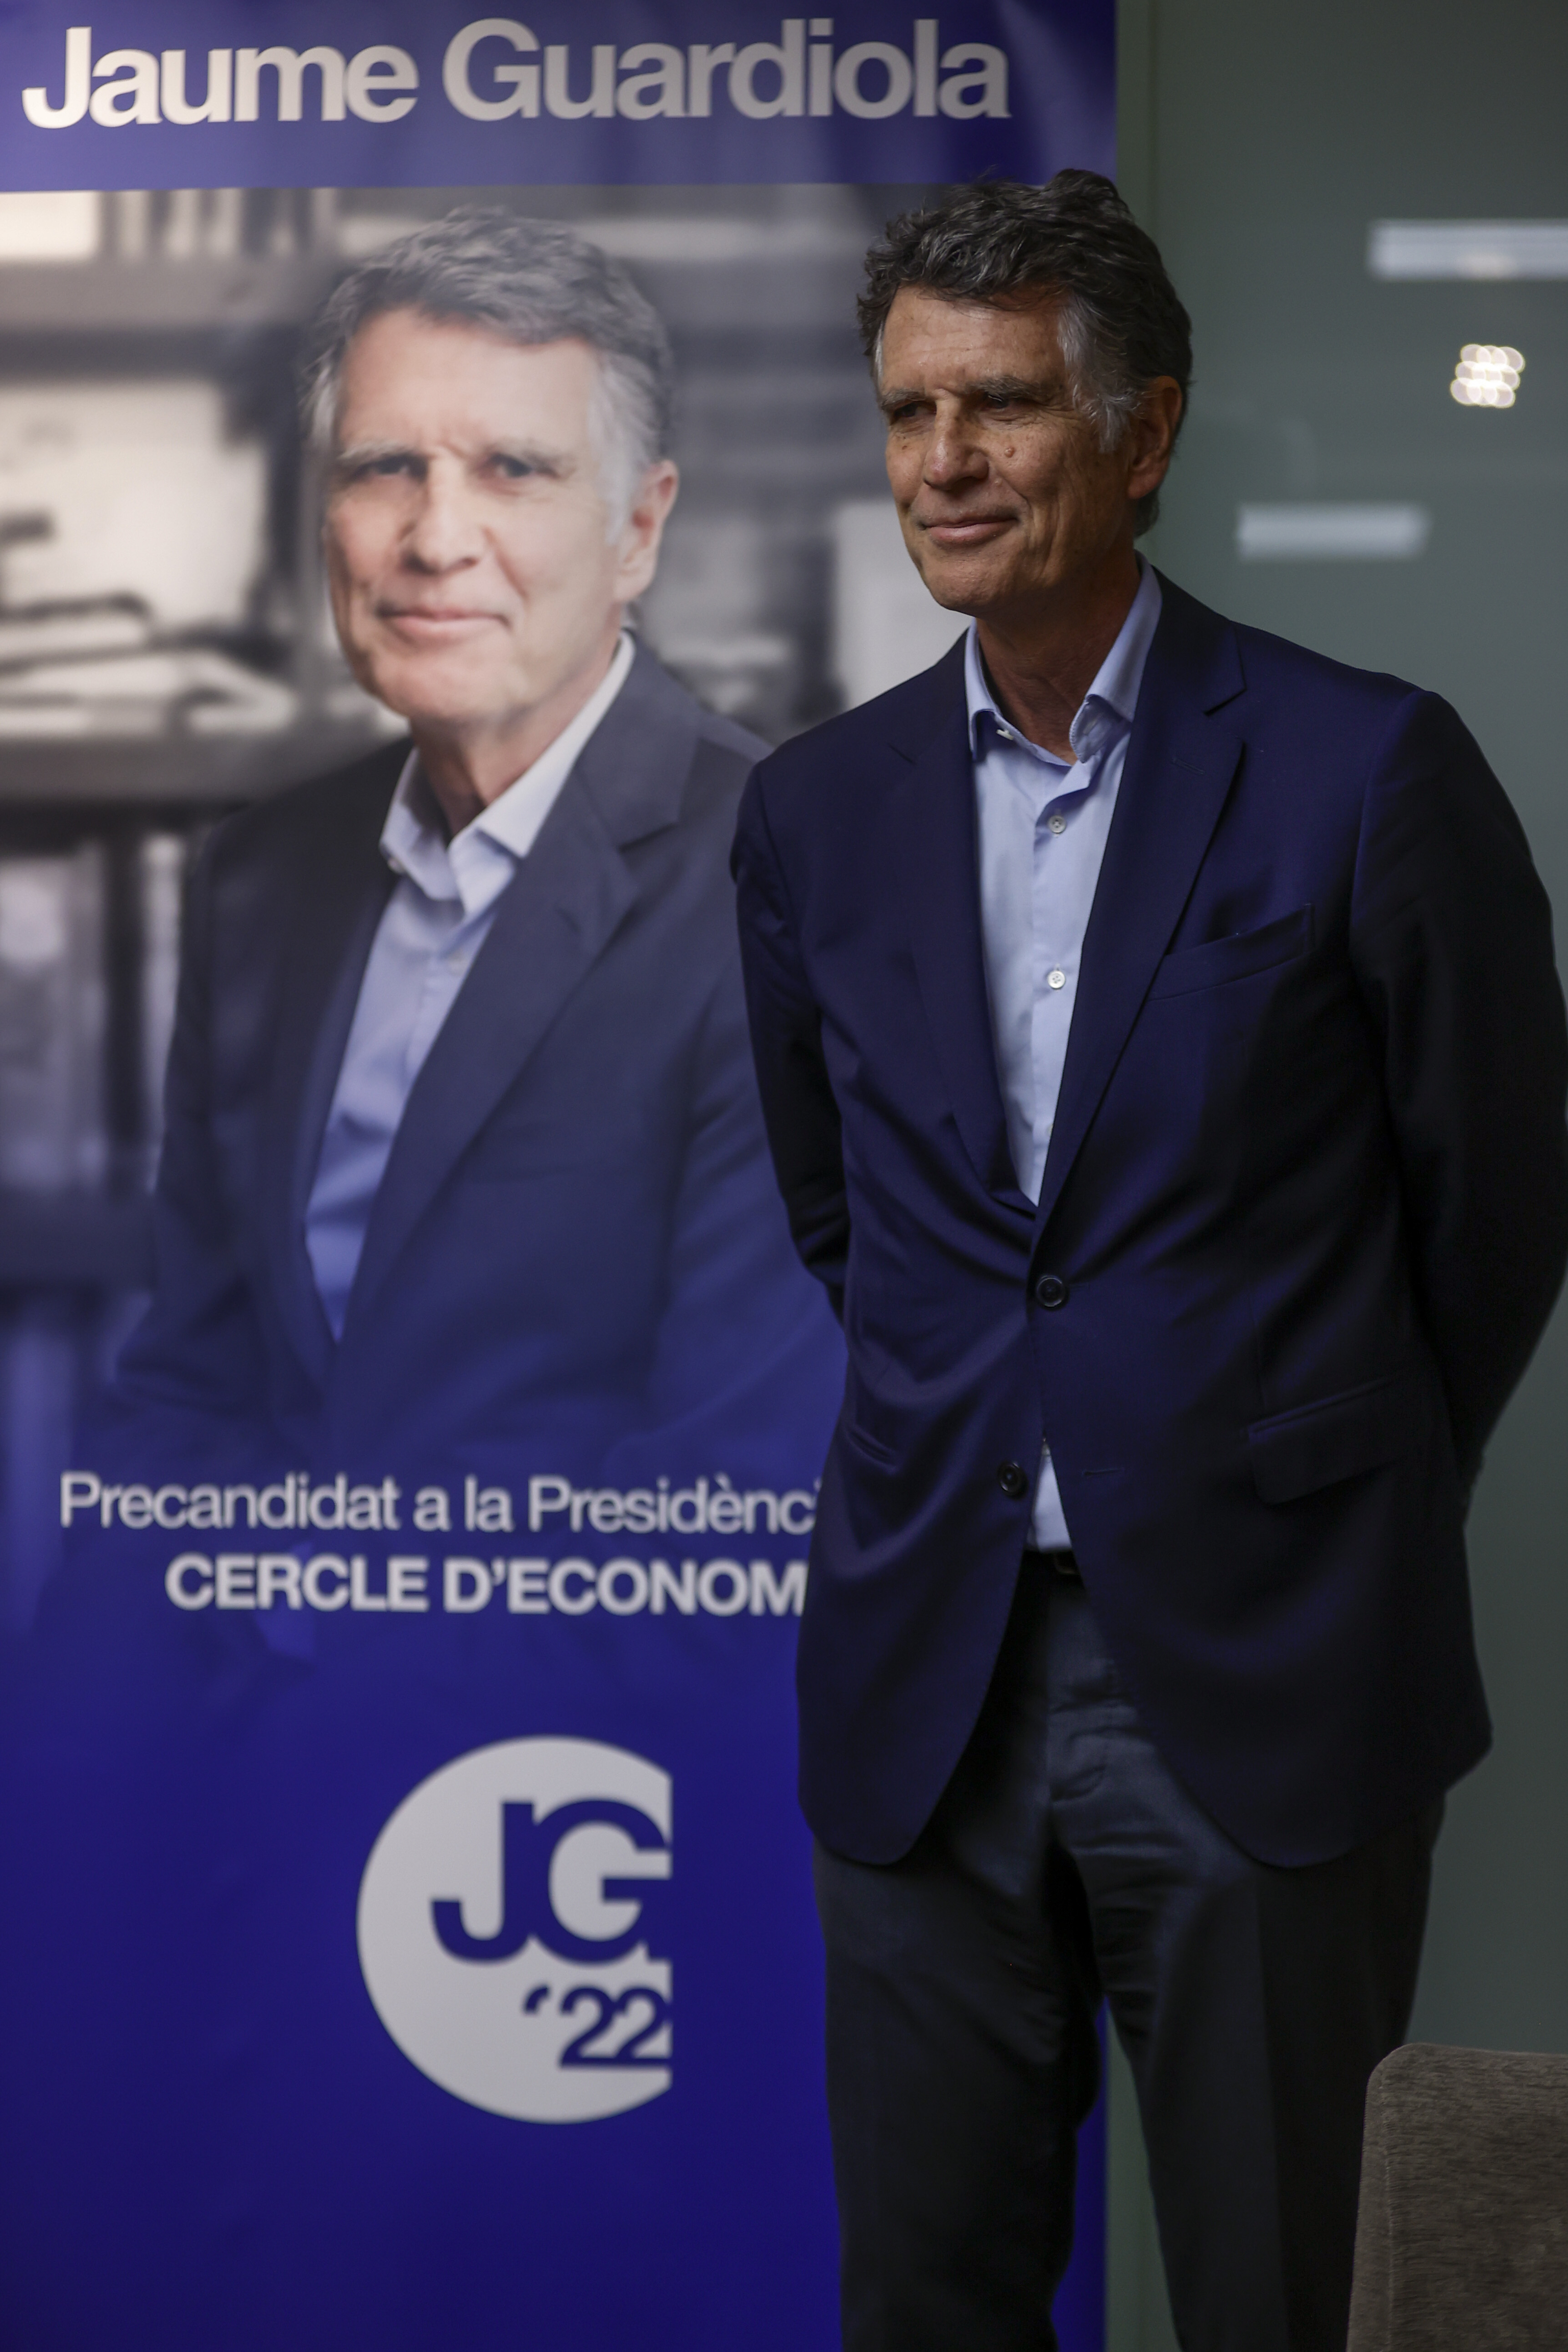 Primeras elecciones en la historia del Cercle: entre el nacionalismo tibio, la crítica a Madrid  y la equidistancia burguesa